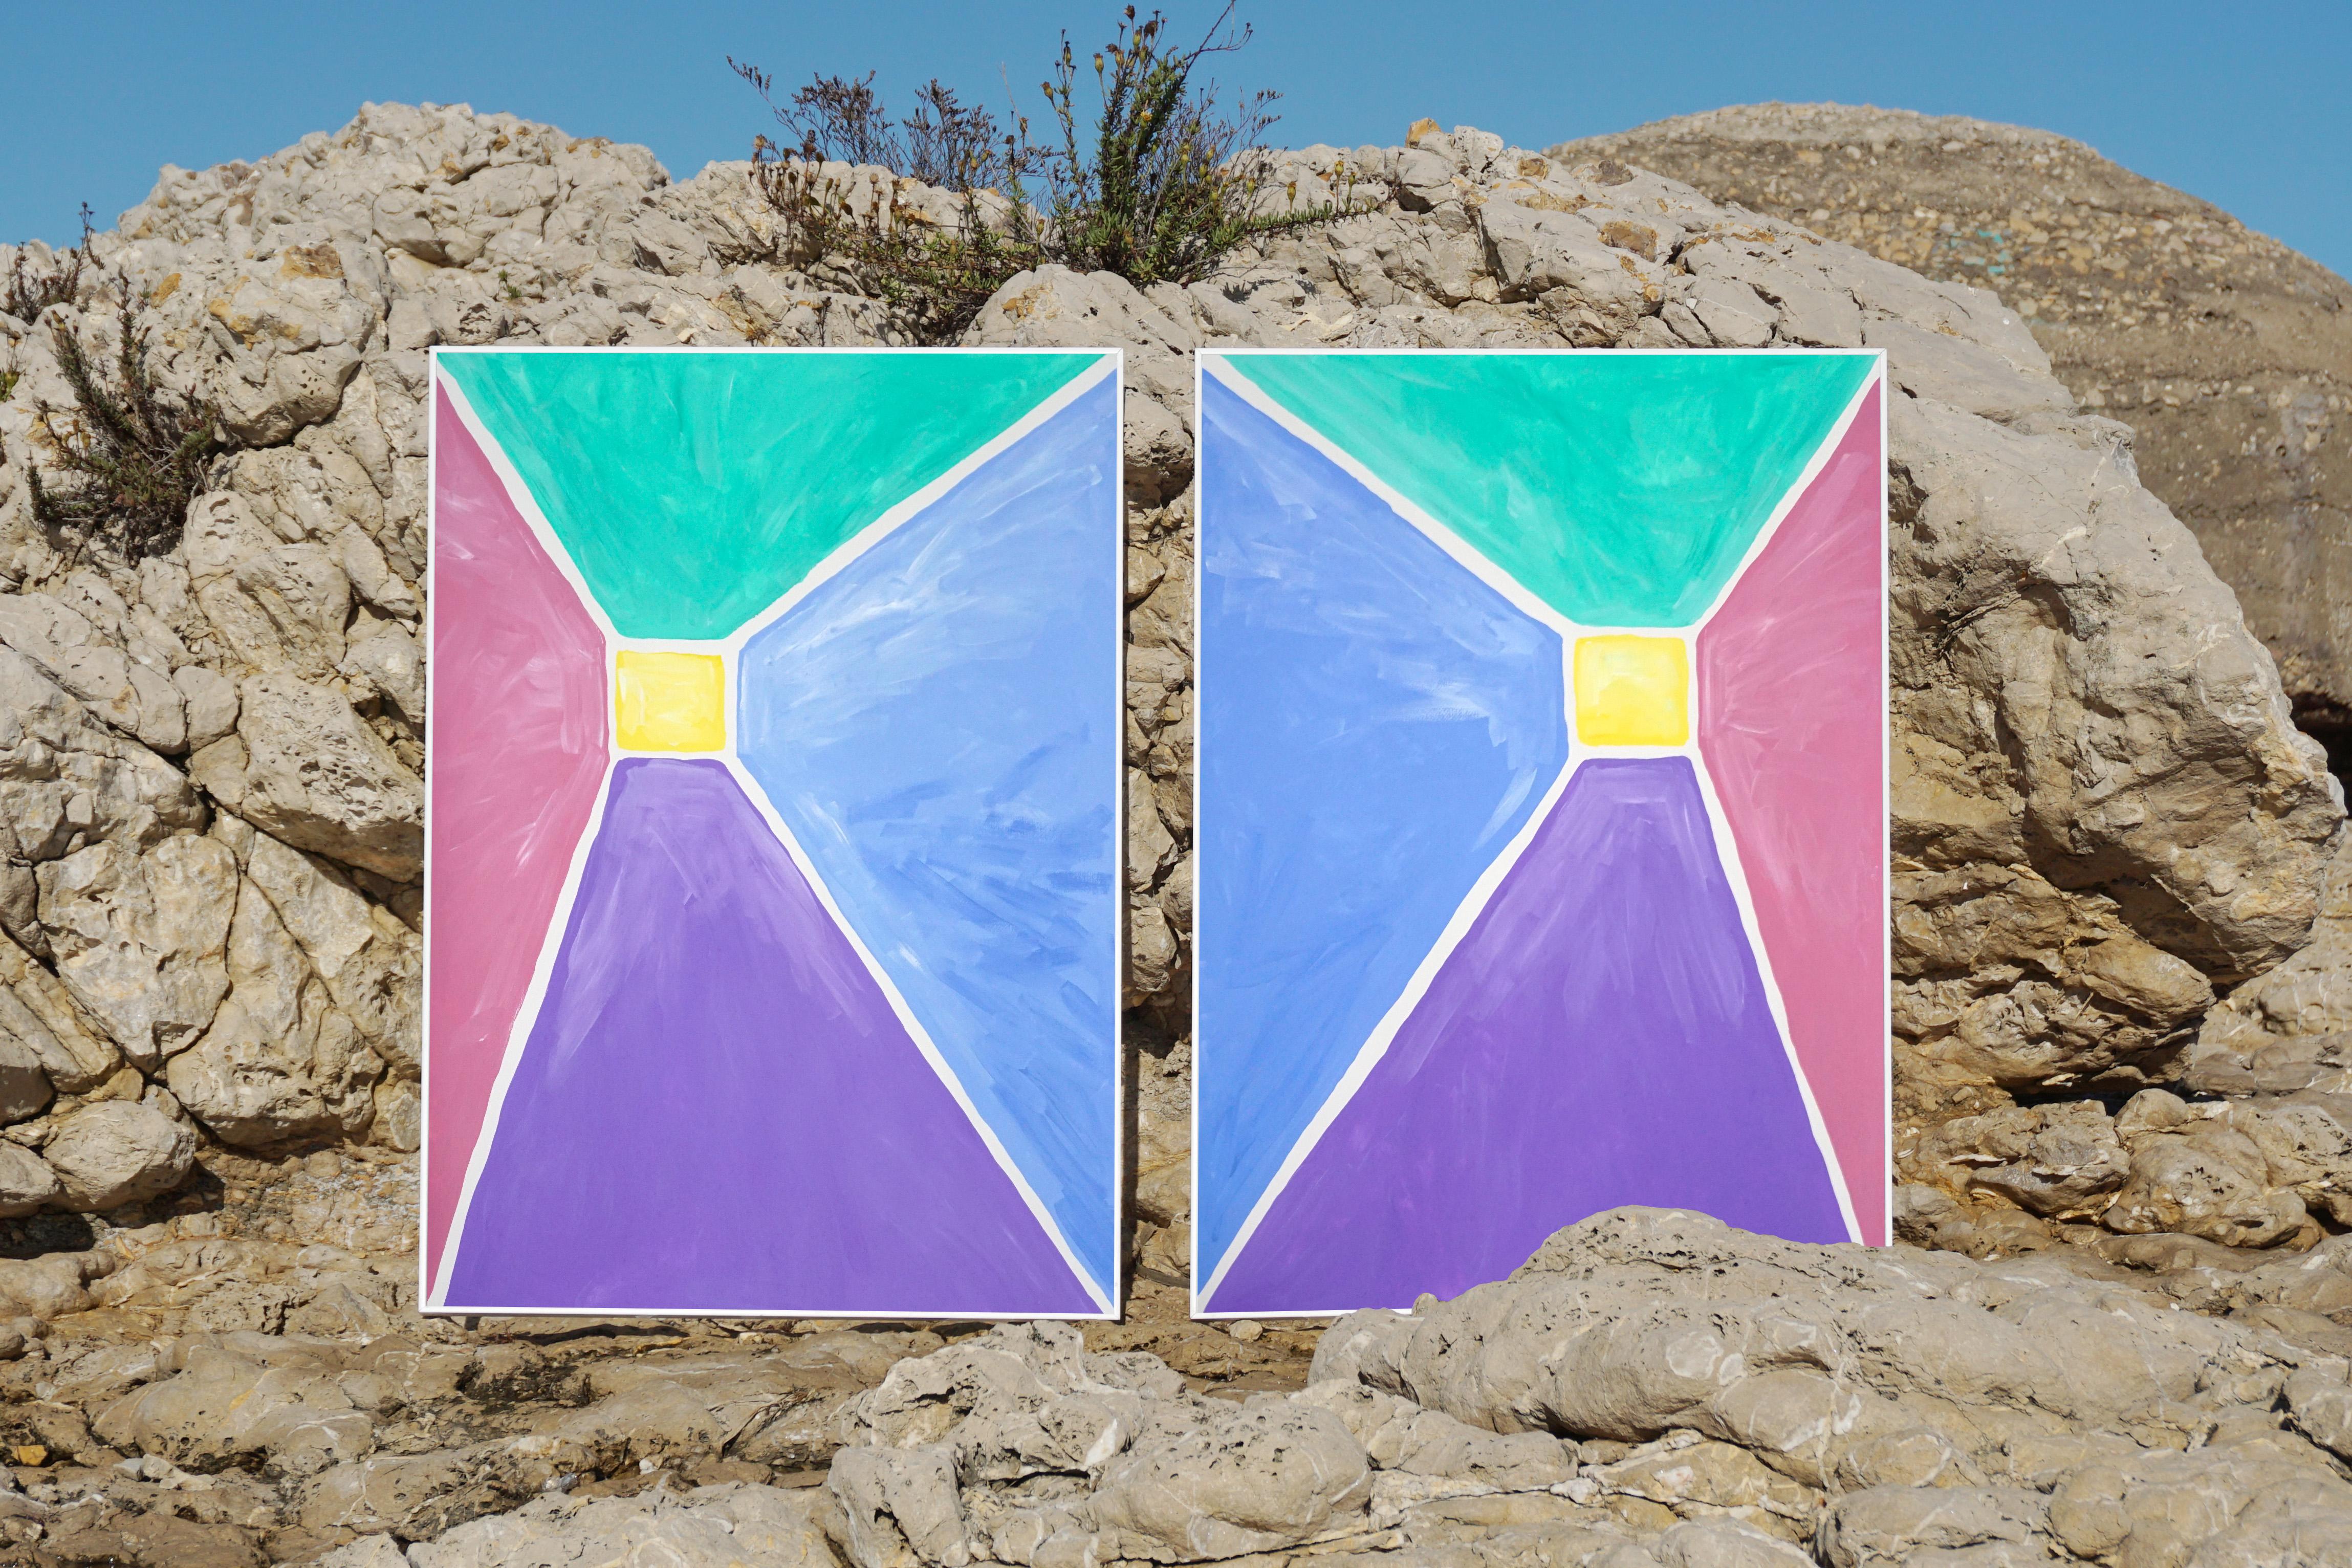 Diptyque pyramidal aux tons pastel, peinture acrylique sur papier, géométrique abstraite  - Painting de Natalia Roman